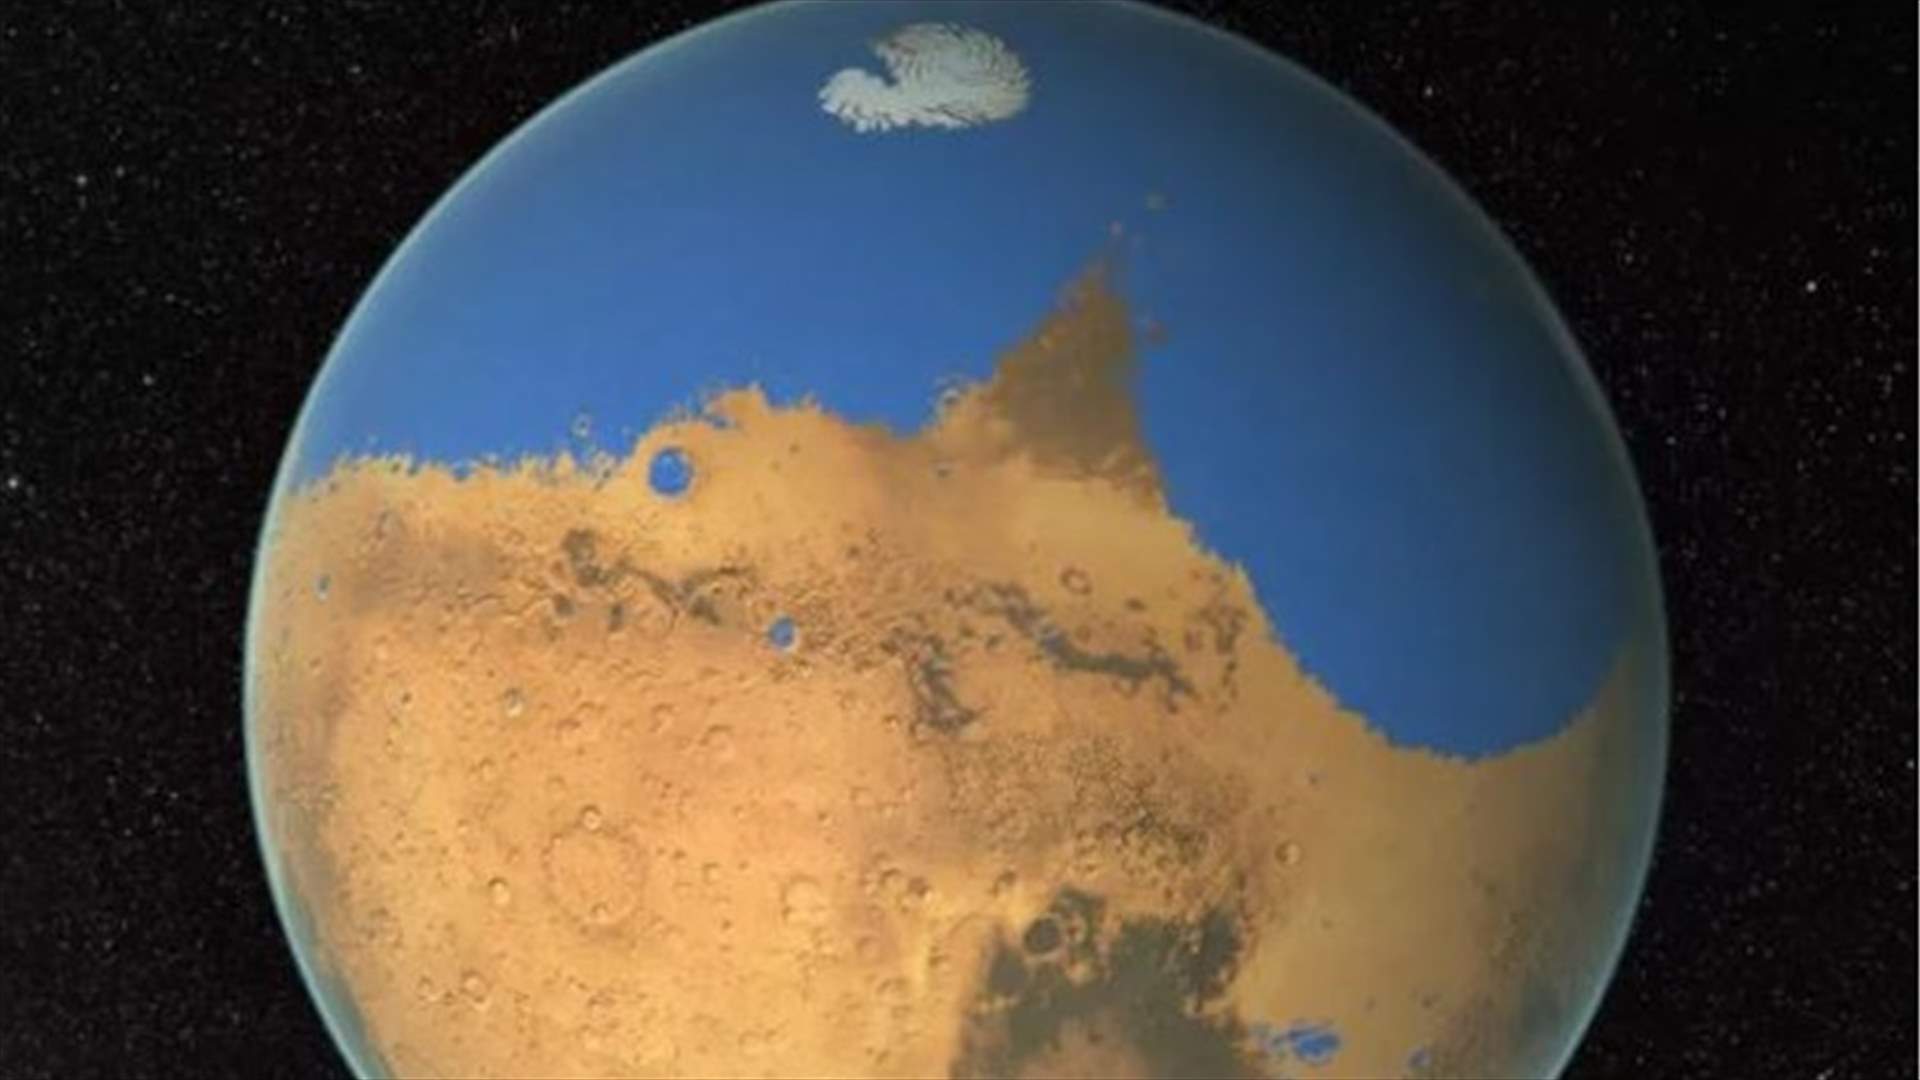 اكتشاف مثير للإهتمام في المريخ... برك ملح أسفل القطب الجنوبي للكوكب الأحمر